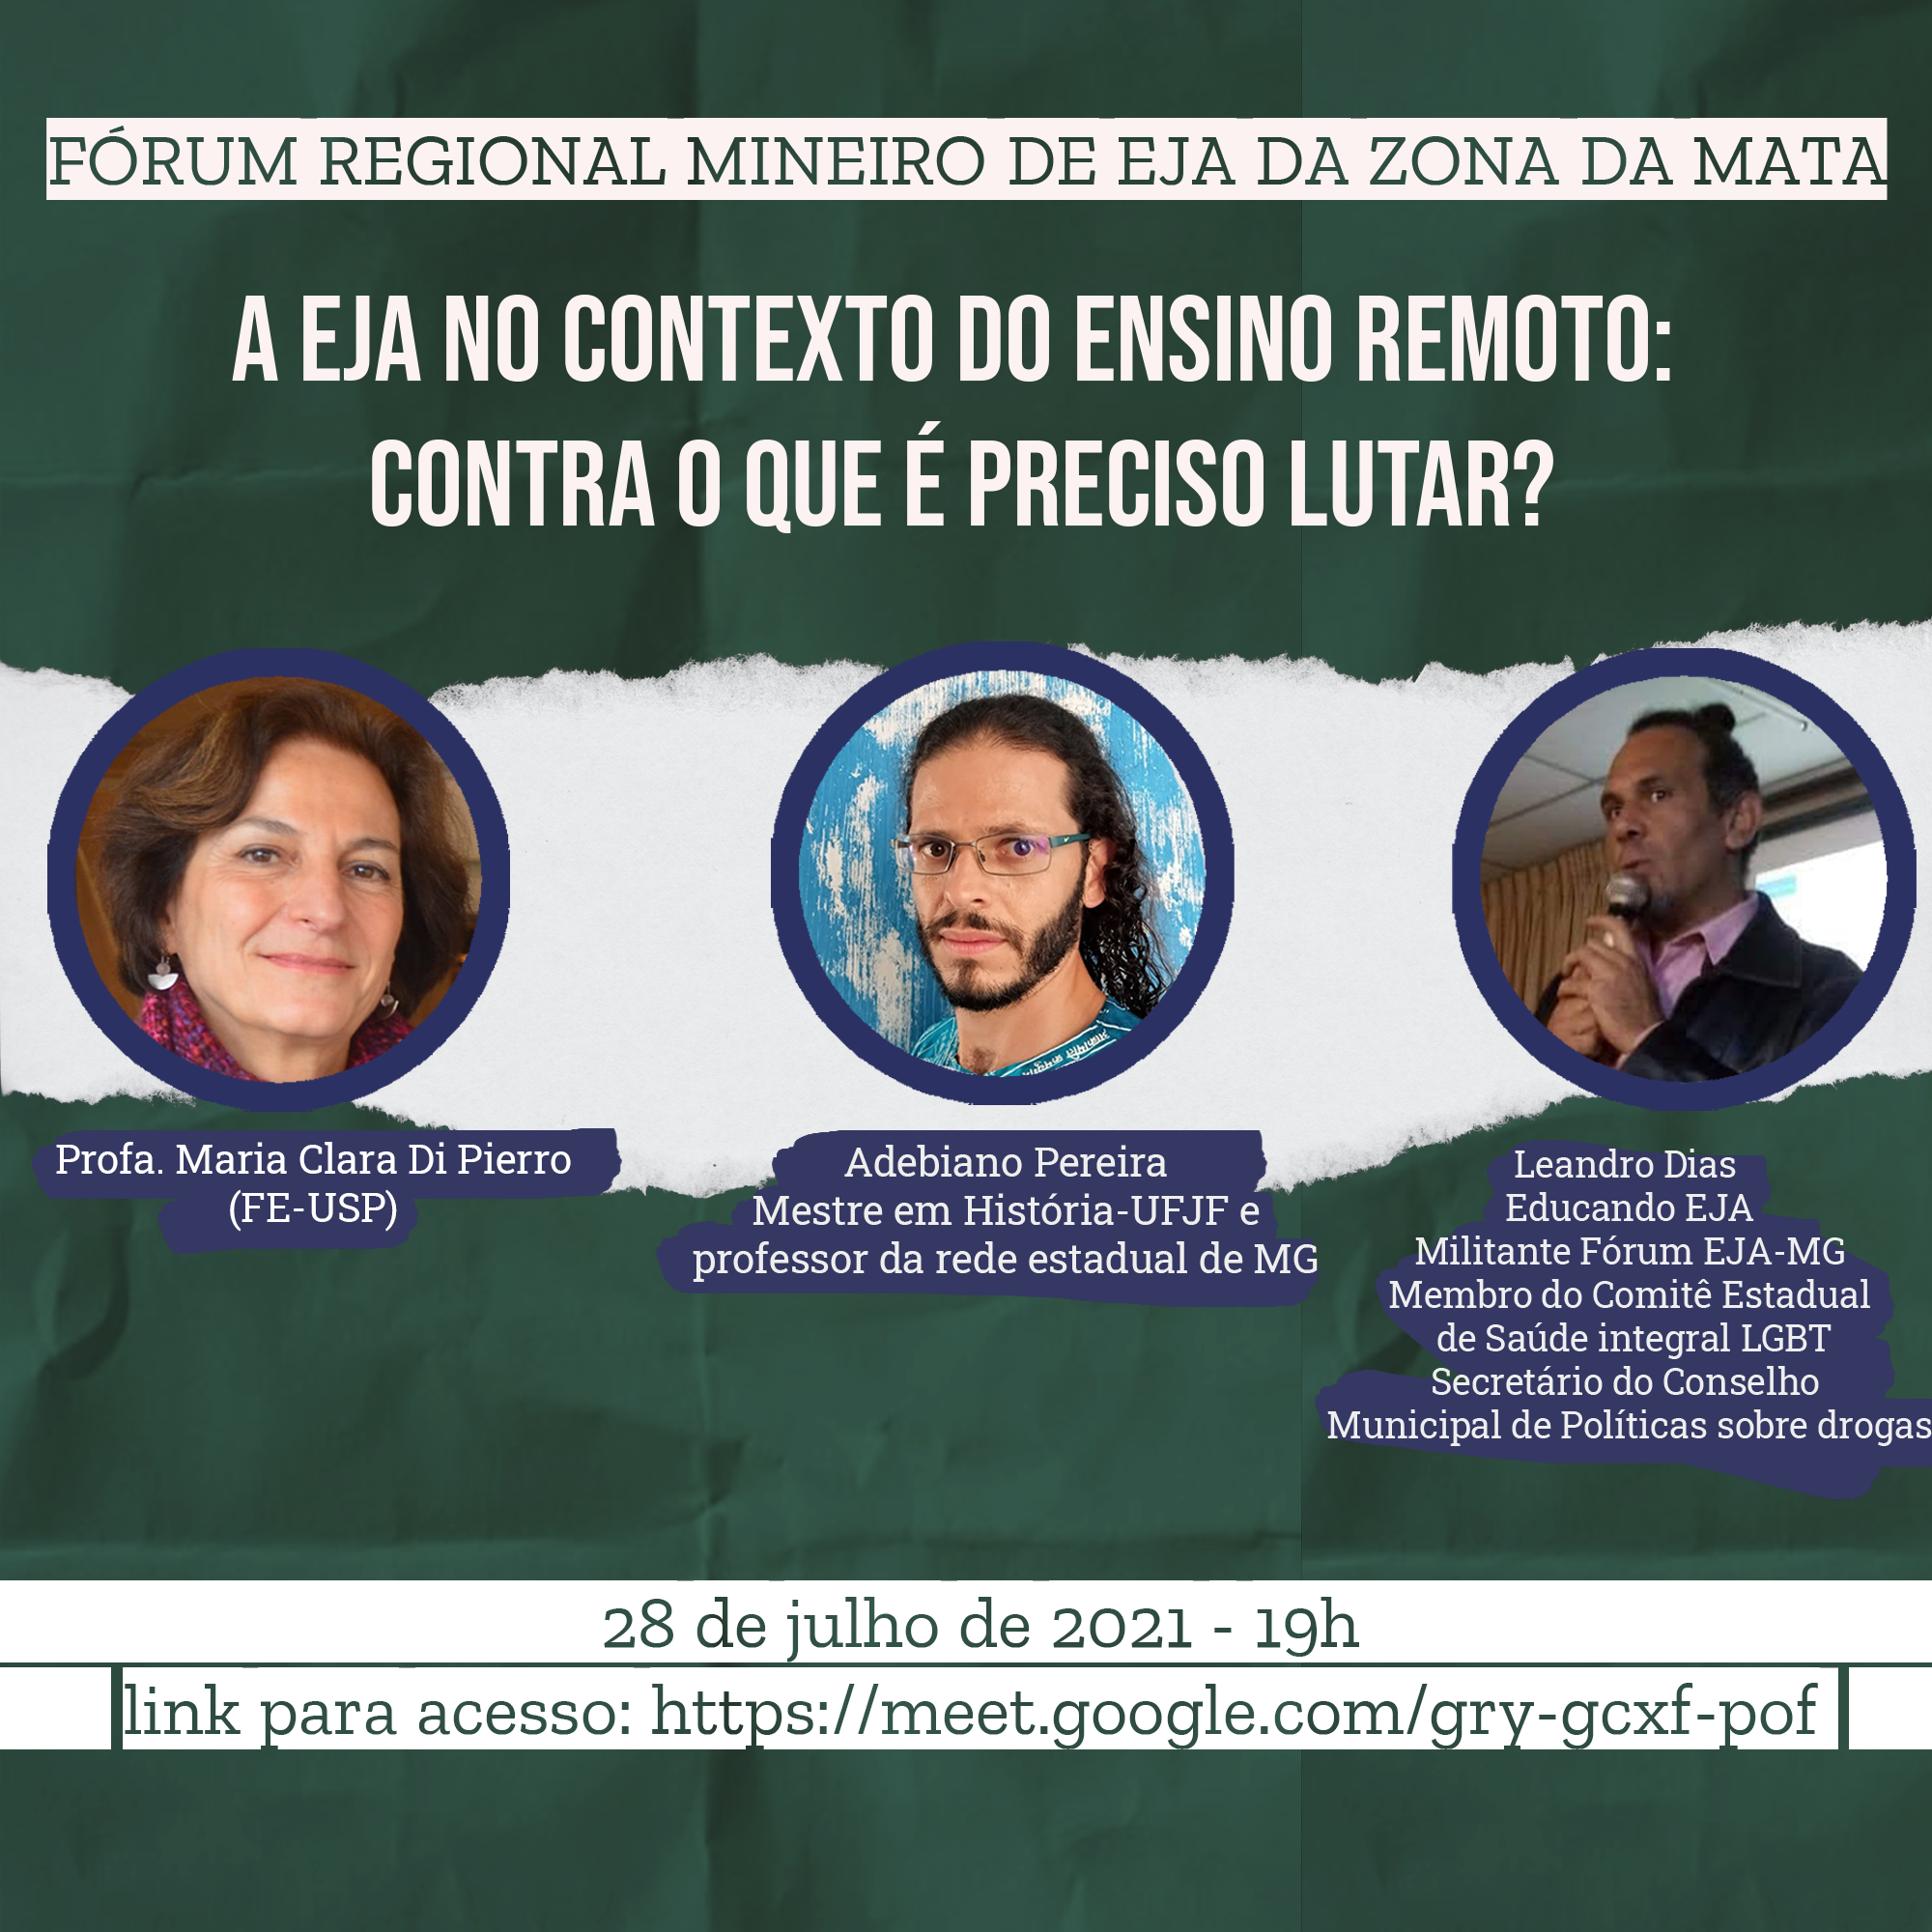 Plenárias mensais do Fórum Regional Mineiro de EJA da Zona da Mata